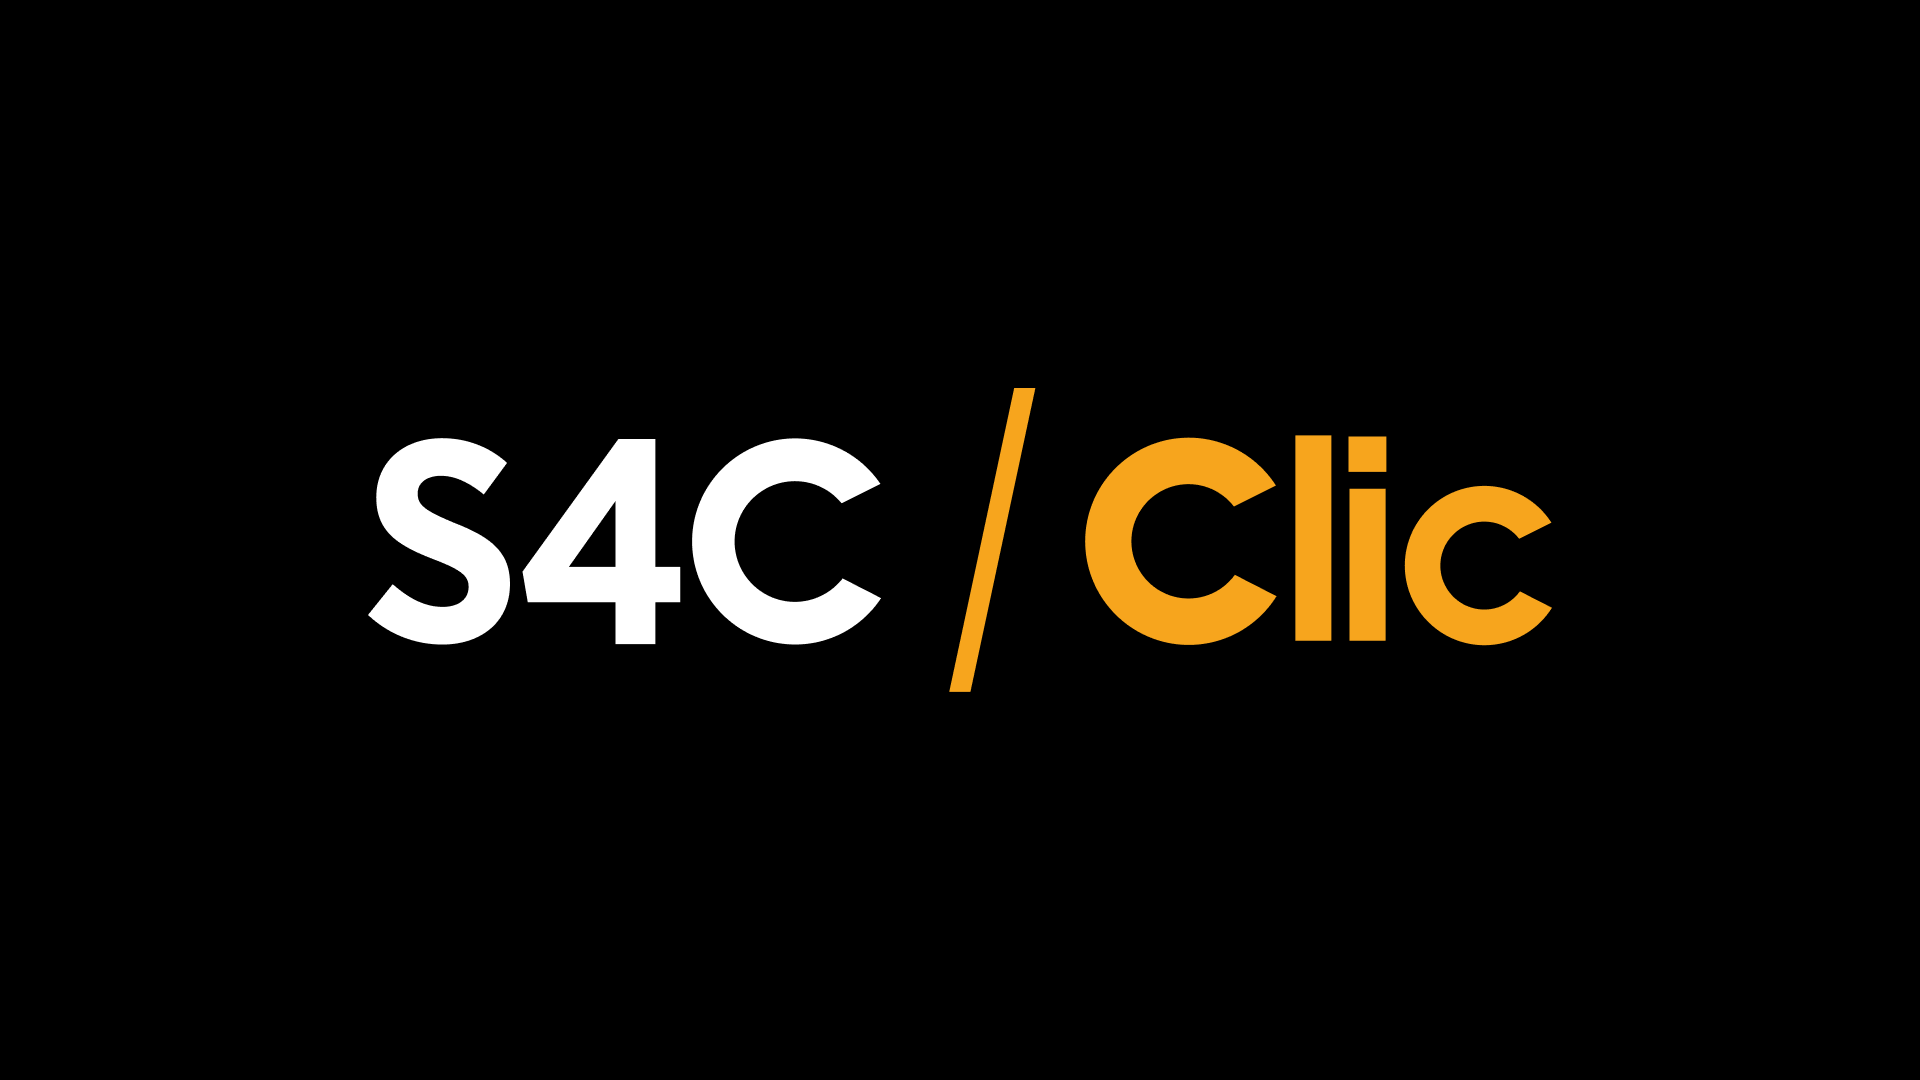 S4C Clic